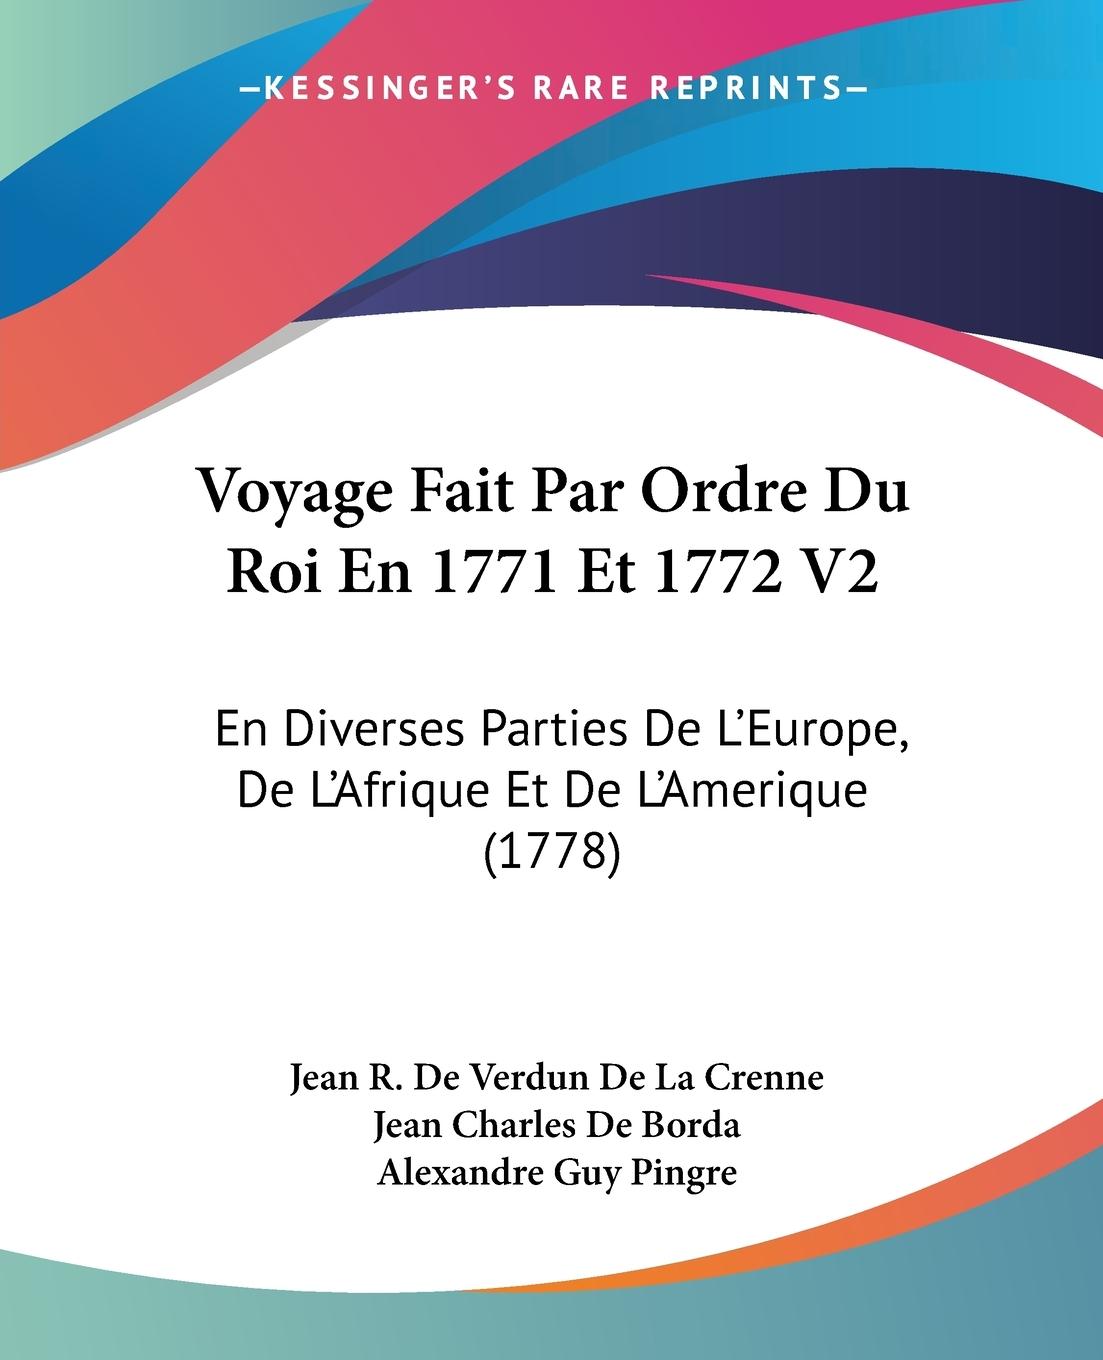 Voyage Fait Par Ordre Du Roi En 1771 Et 1772 V2 - Crenne, Jean R. De Verdun De La Borda, Jean Charles De Pingre, Alexandre Guy